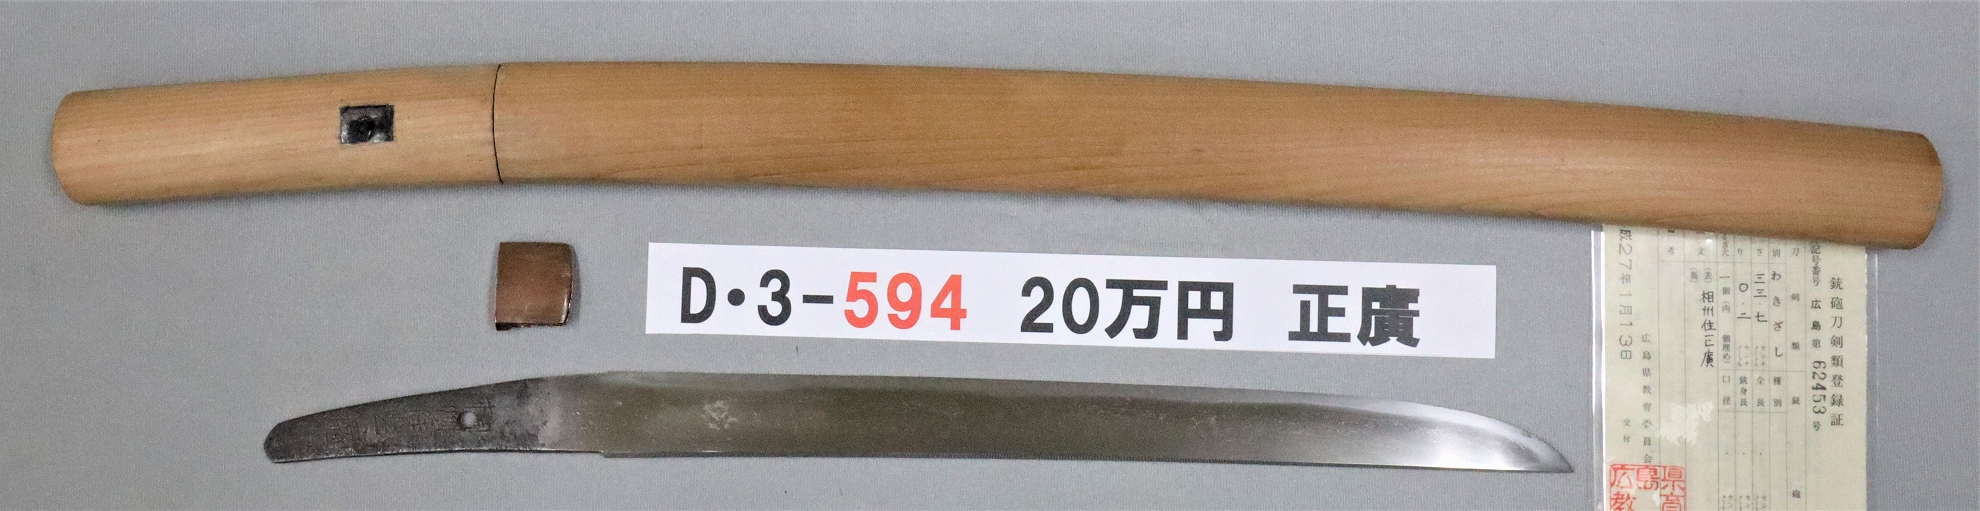 D3594